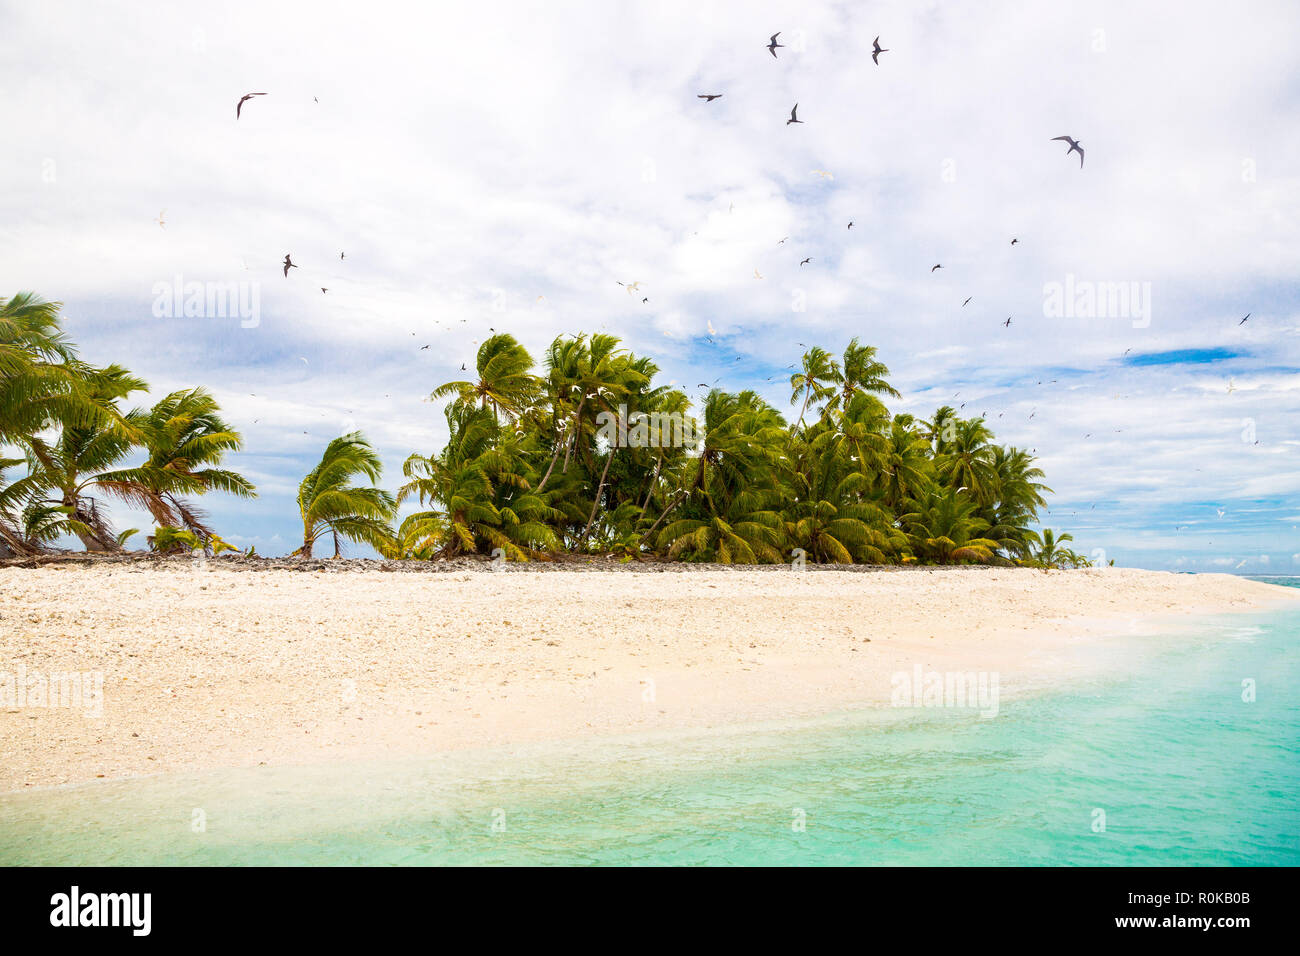 Pequeña isla tropical remoto (motu) cubierto de palmeras en el azul turquesa de la laguna azul. Playa de arena amarilla, gran bandada de pájaros que vuelan por encima. Tuvalu. Foto de stock